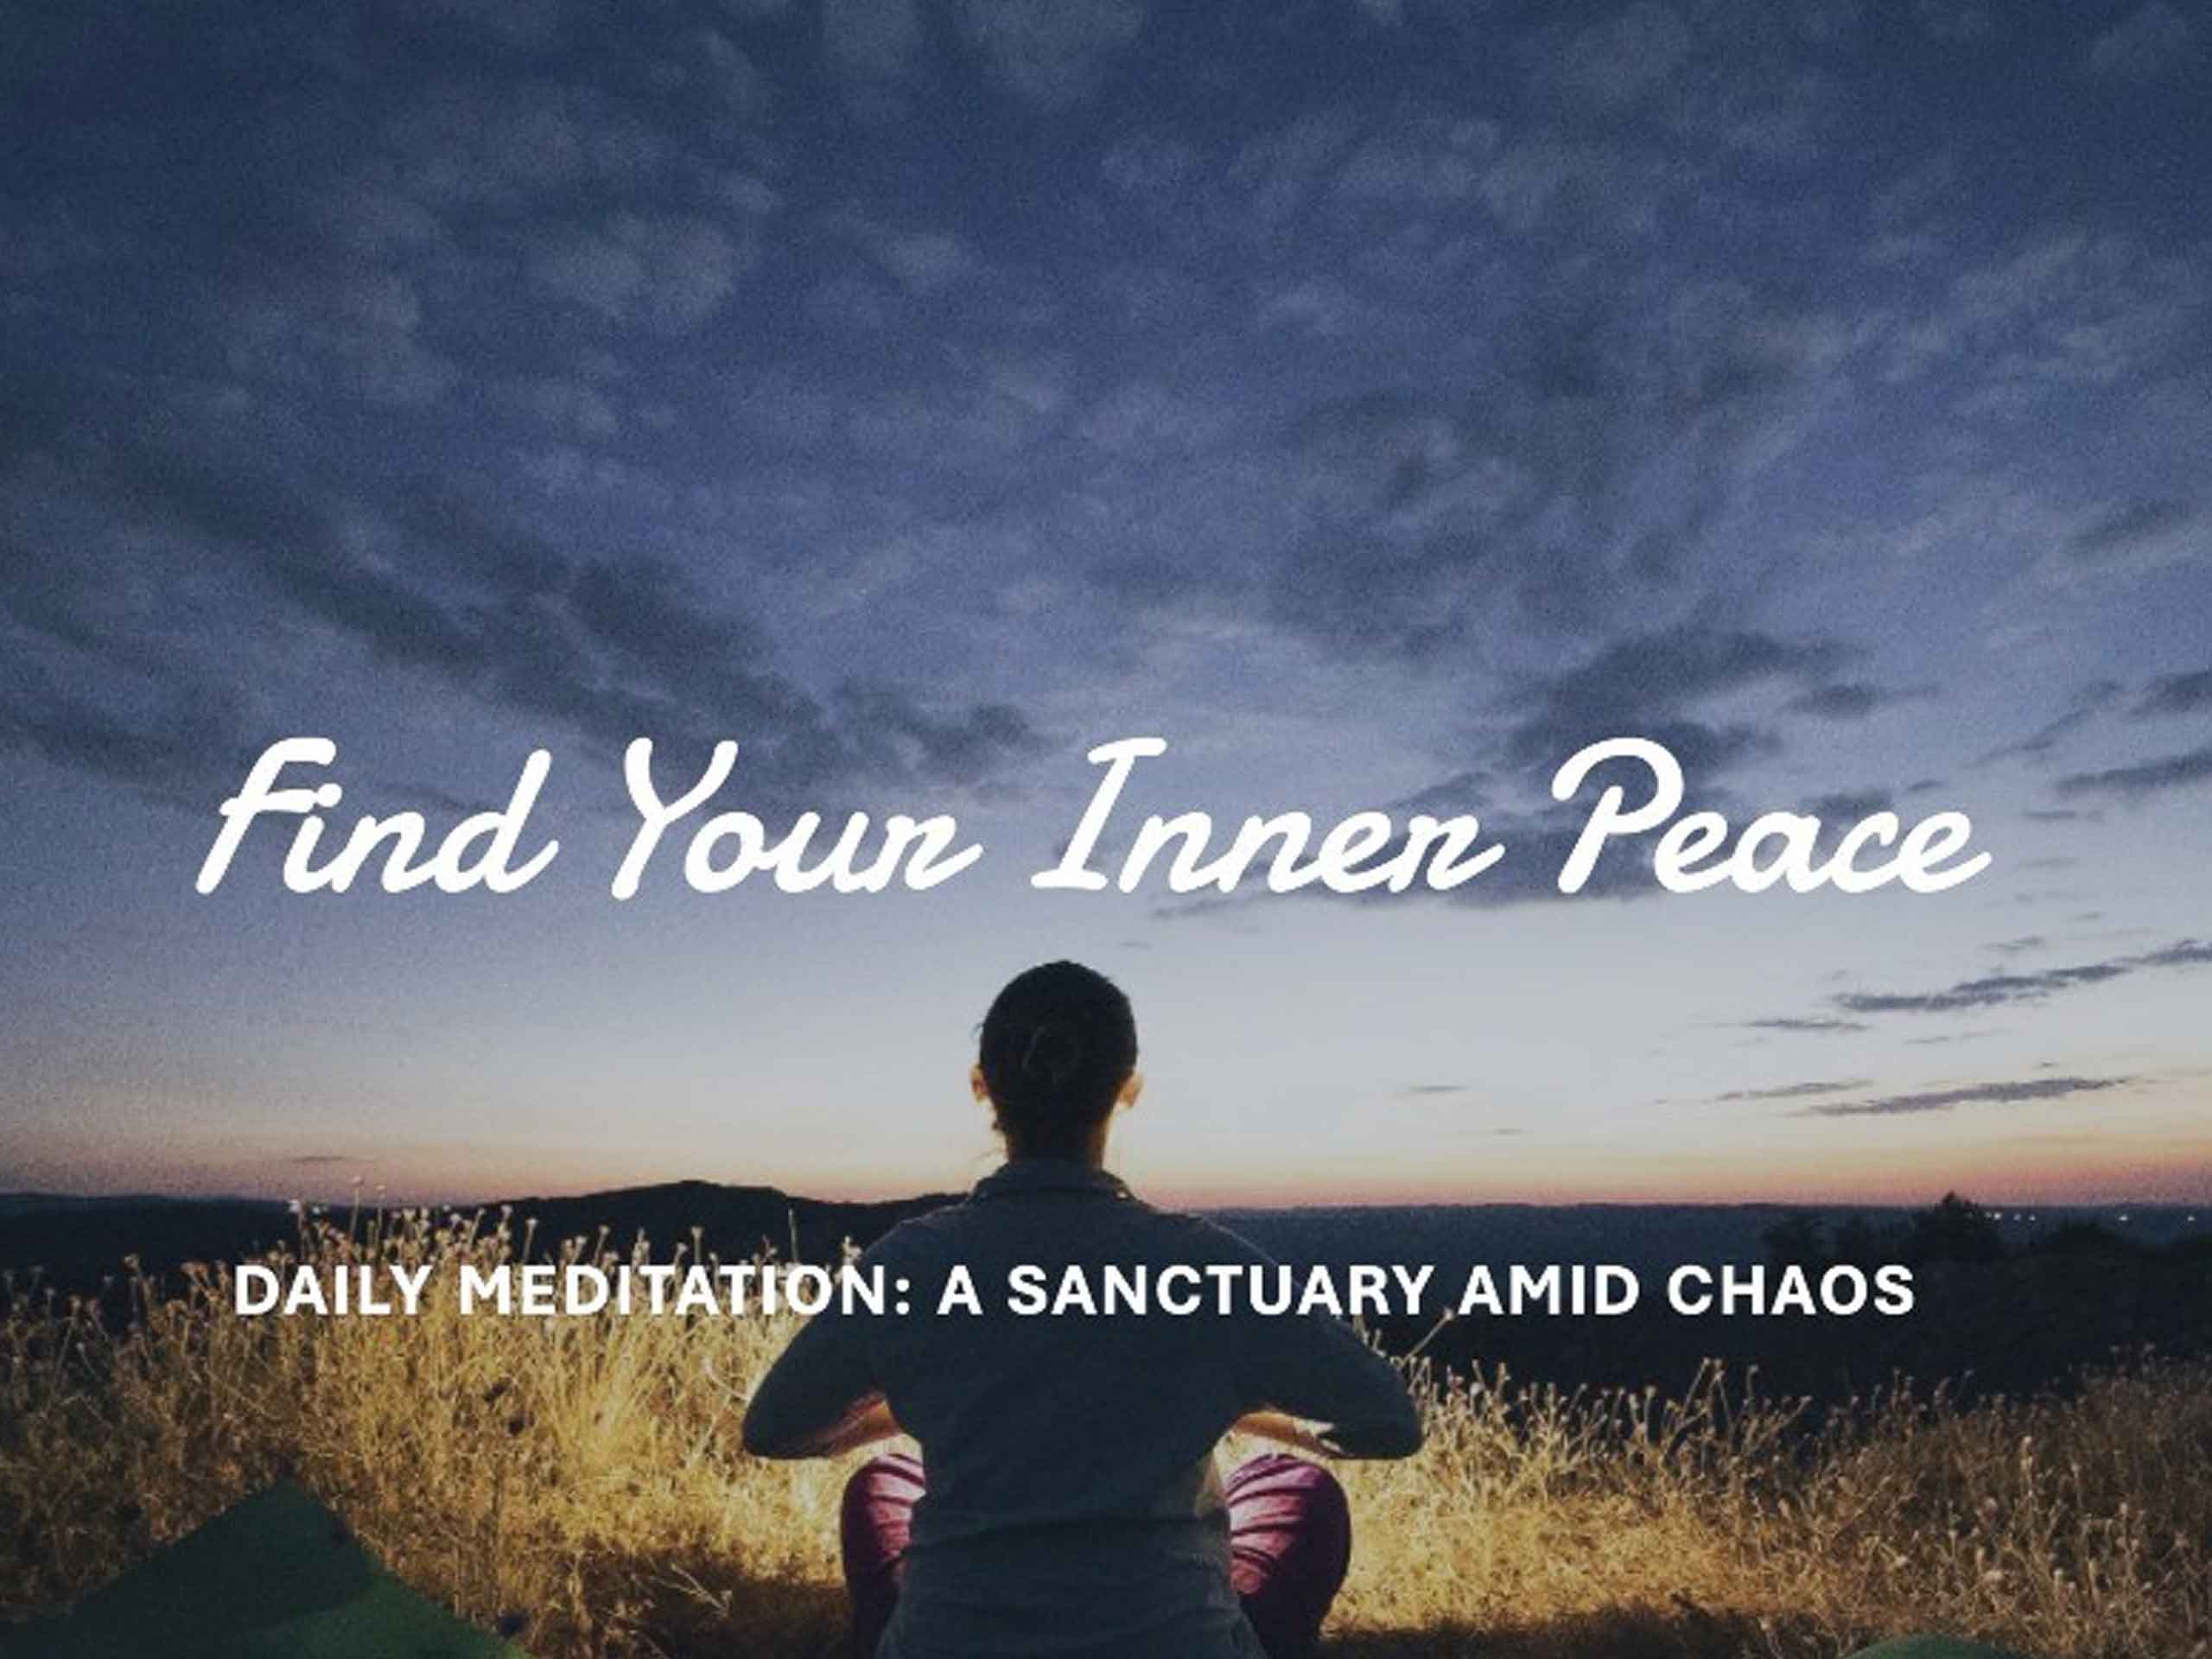 Daily Meditation: A Sanctuary Amid Chaos